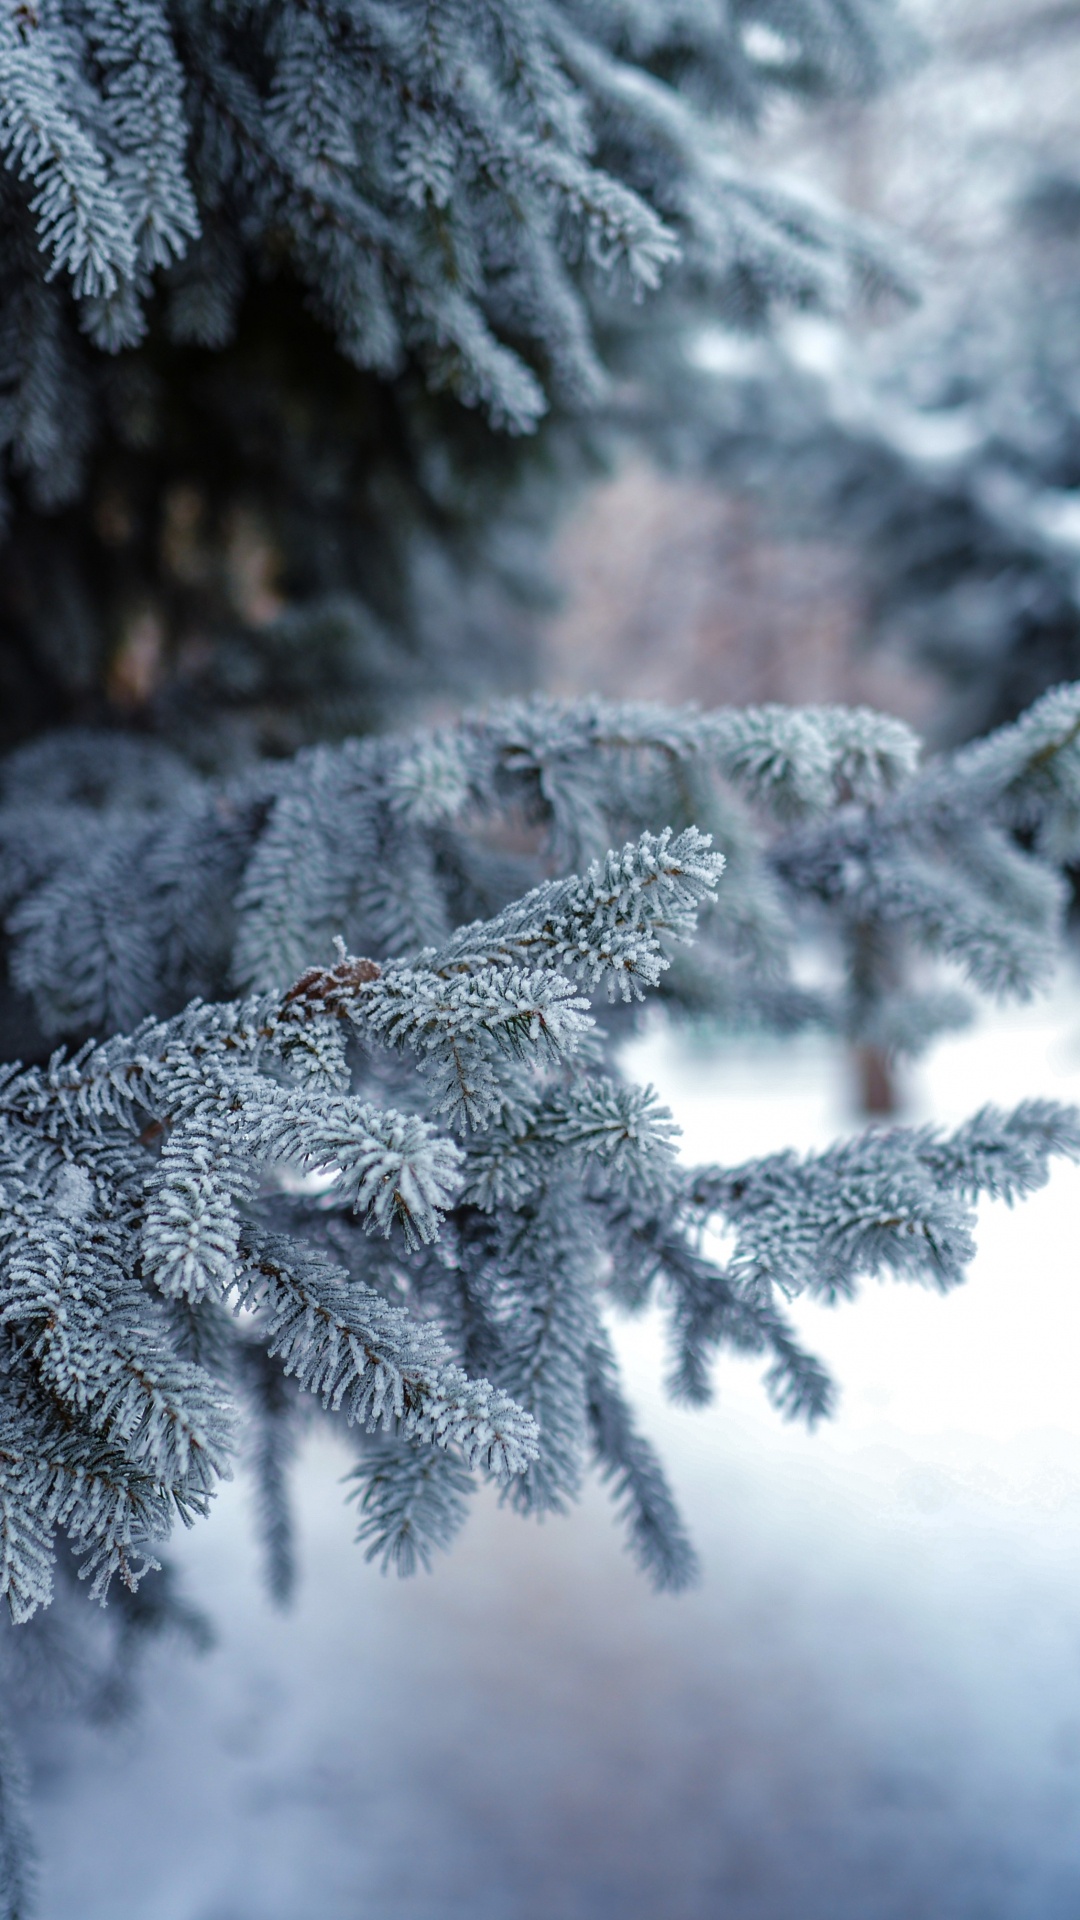 冬天, 冻结, 温带针叶林, 性质, 木本植物 壁纸 1080x1920 允许